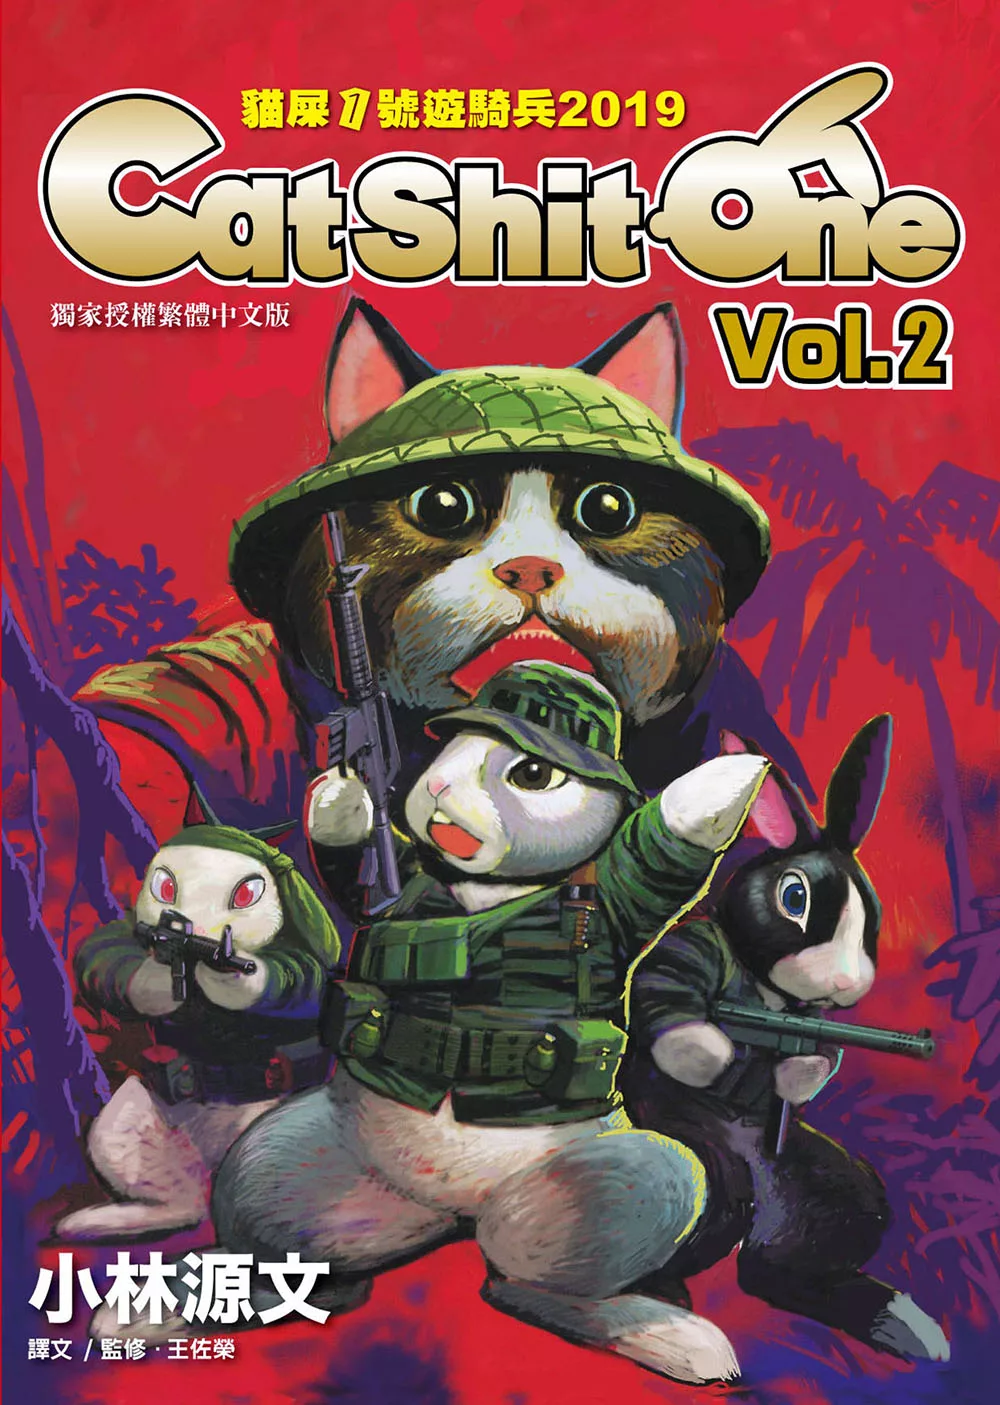 貓屎1號遊騎兵2019 Cat Shit One VOL.2 (電子書)